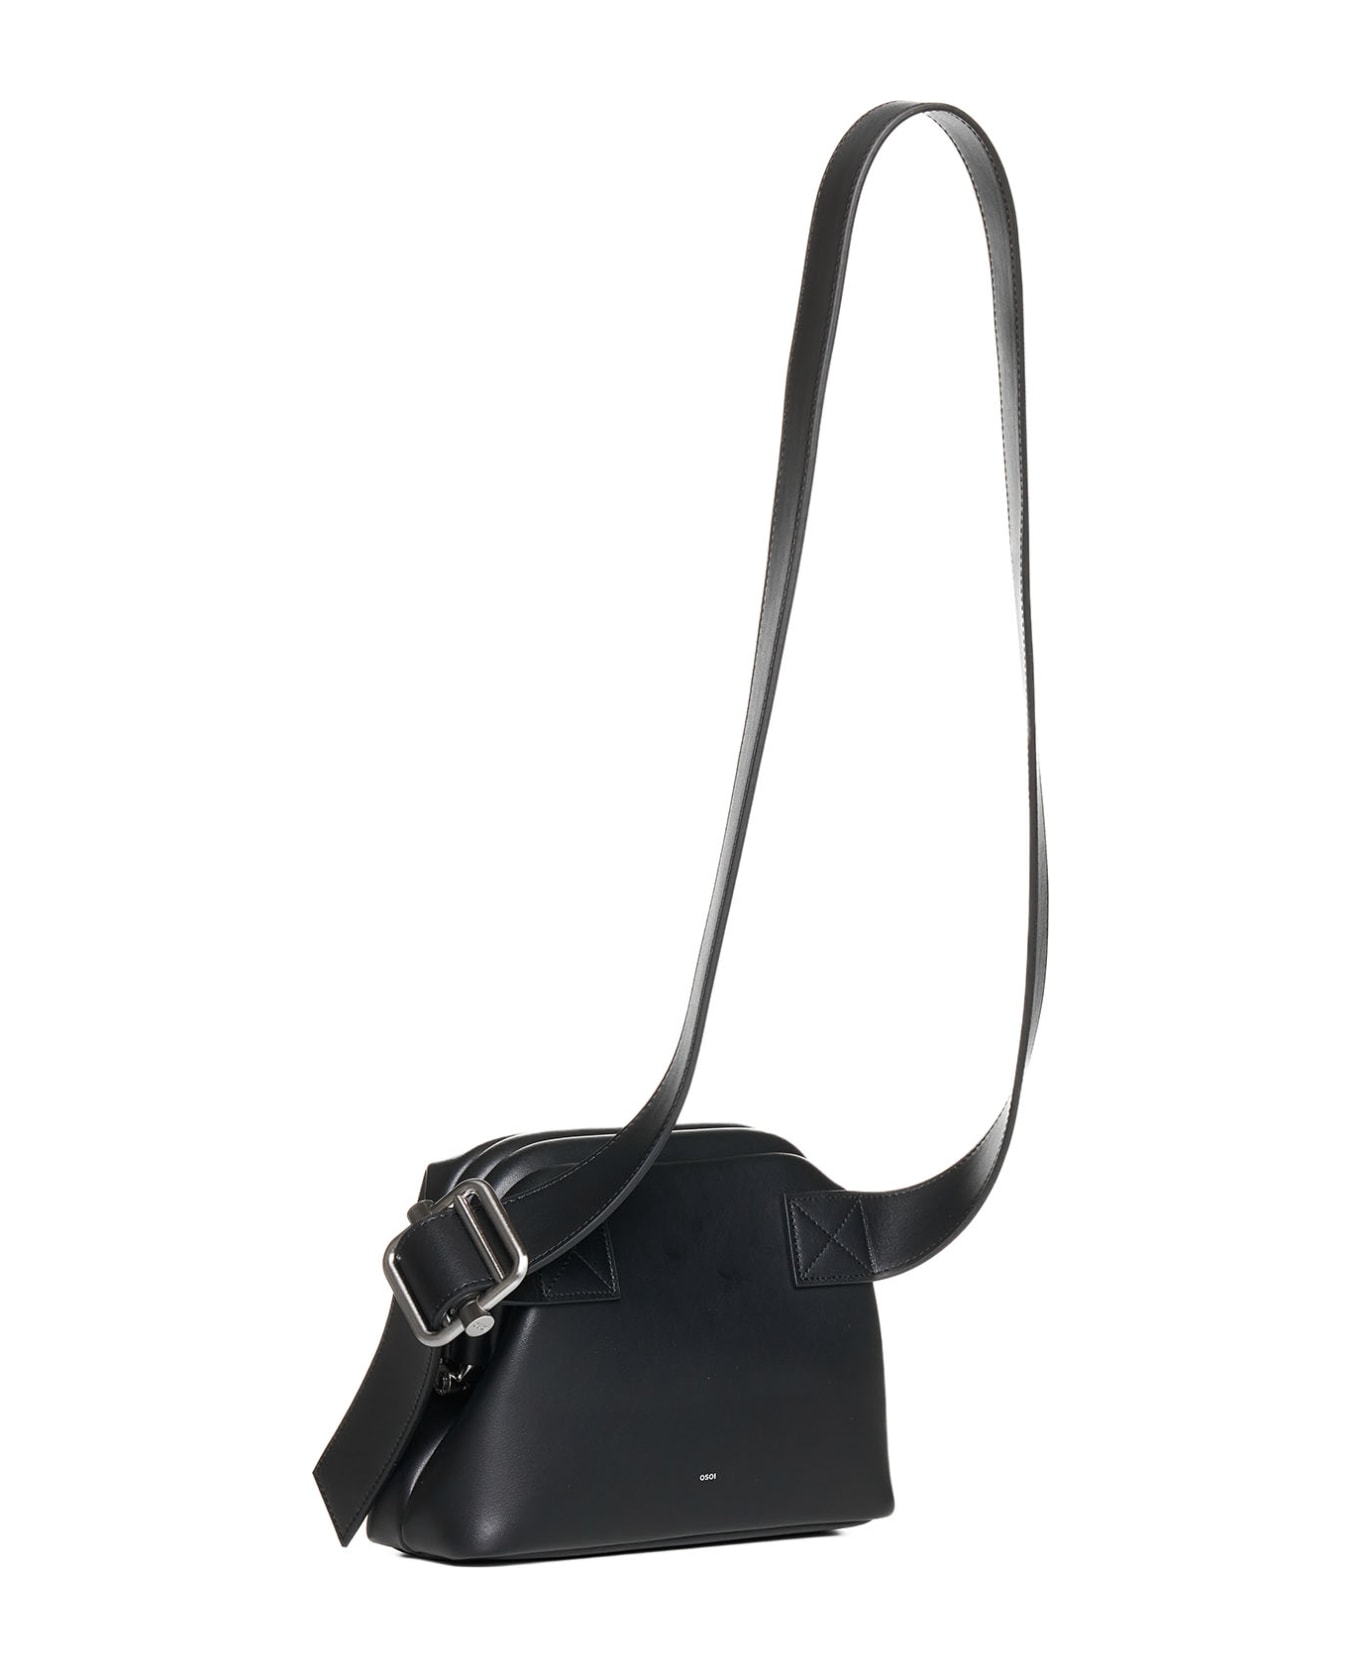 OSOI Shoulder Bag - Black ベルトバッグ